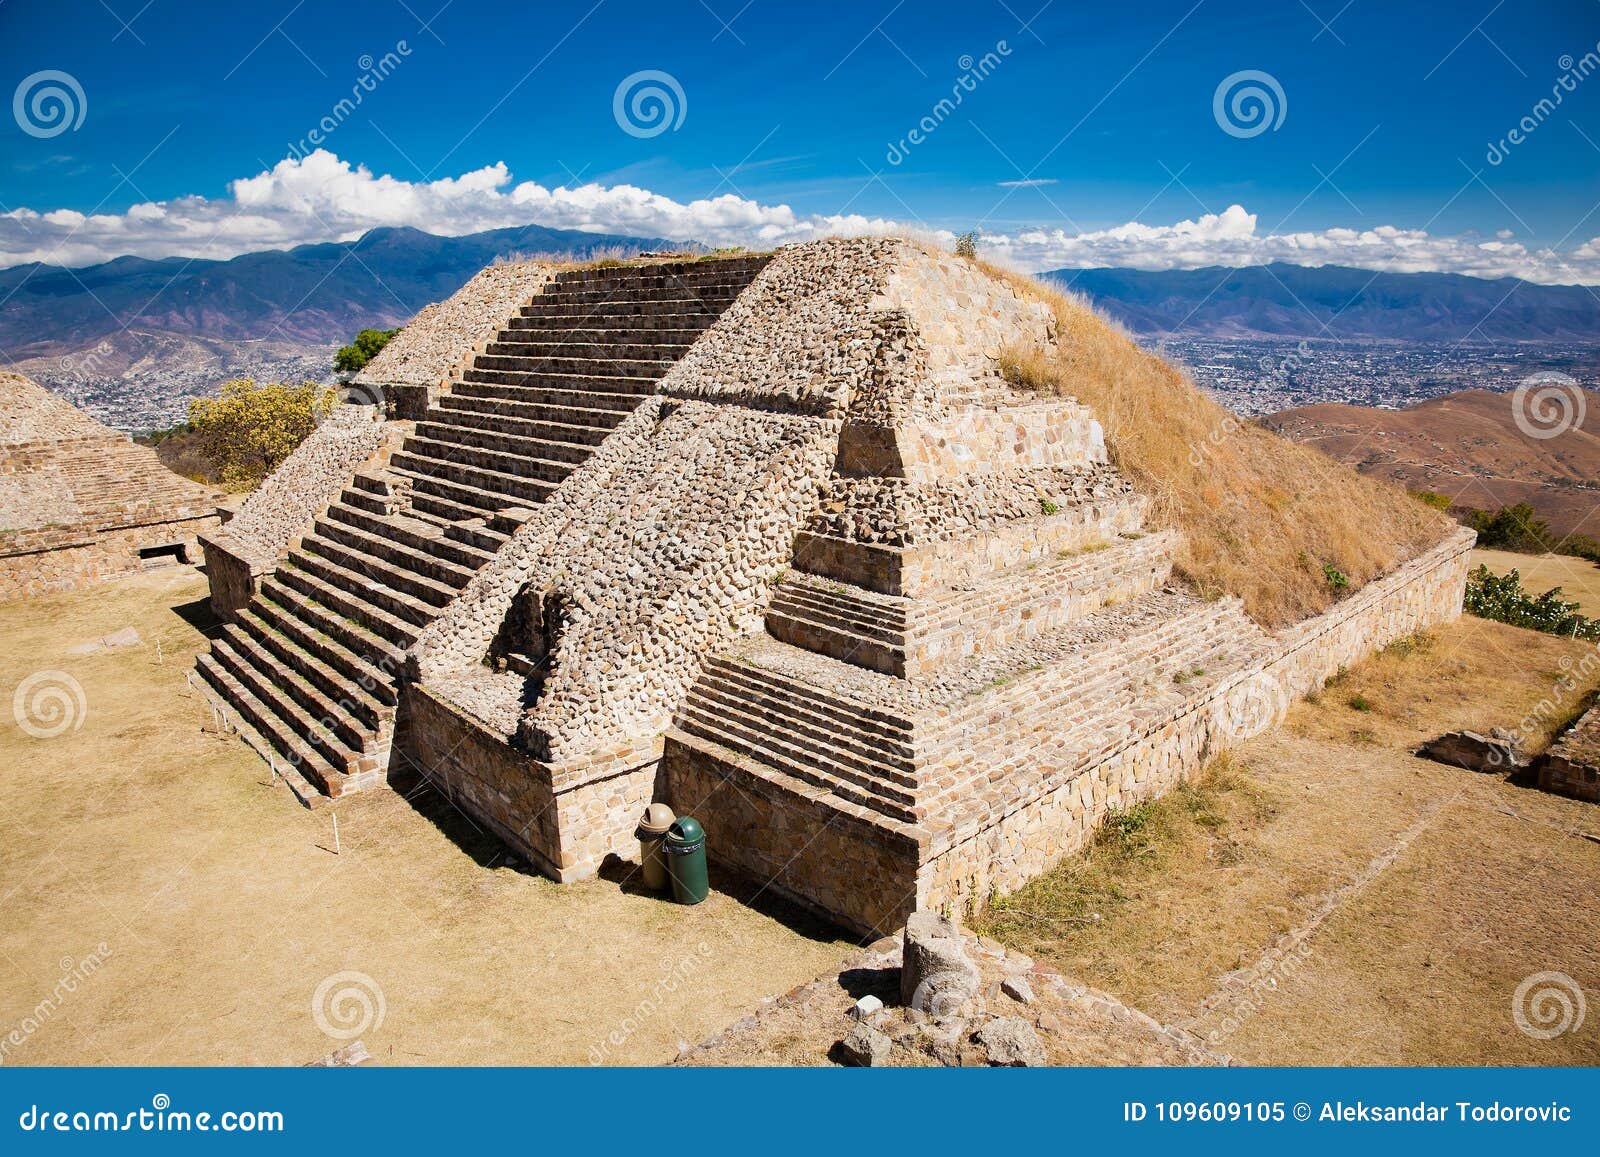 monte alban ruins of the zapotec civilization in oaxaca, mexico